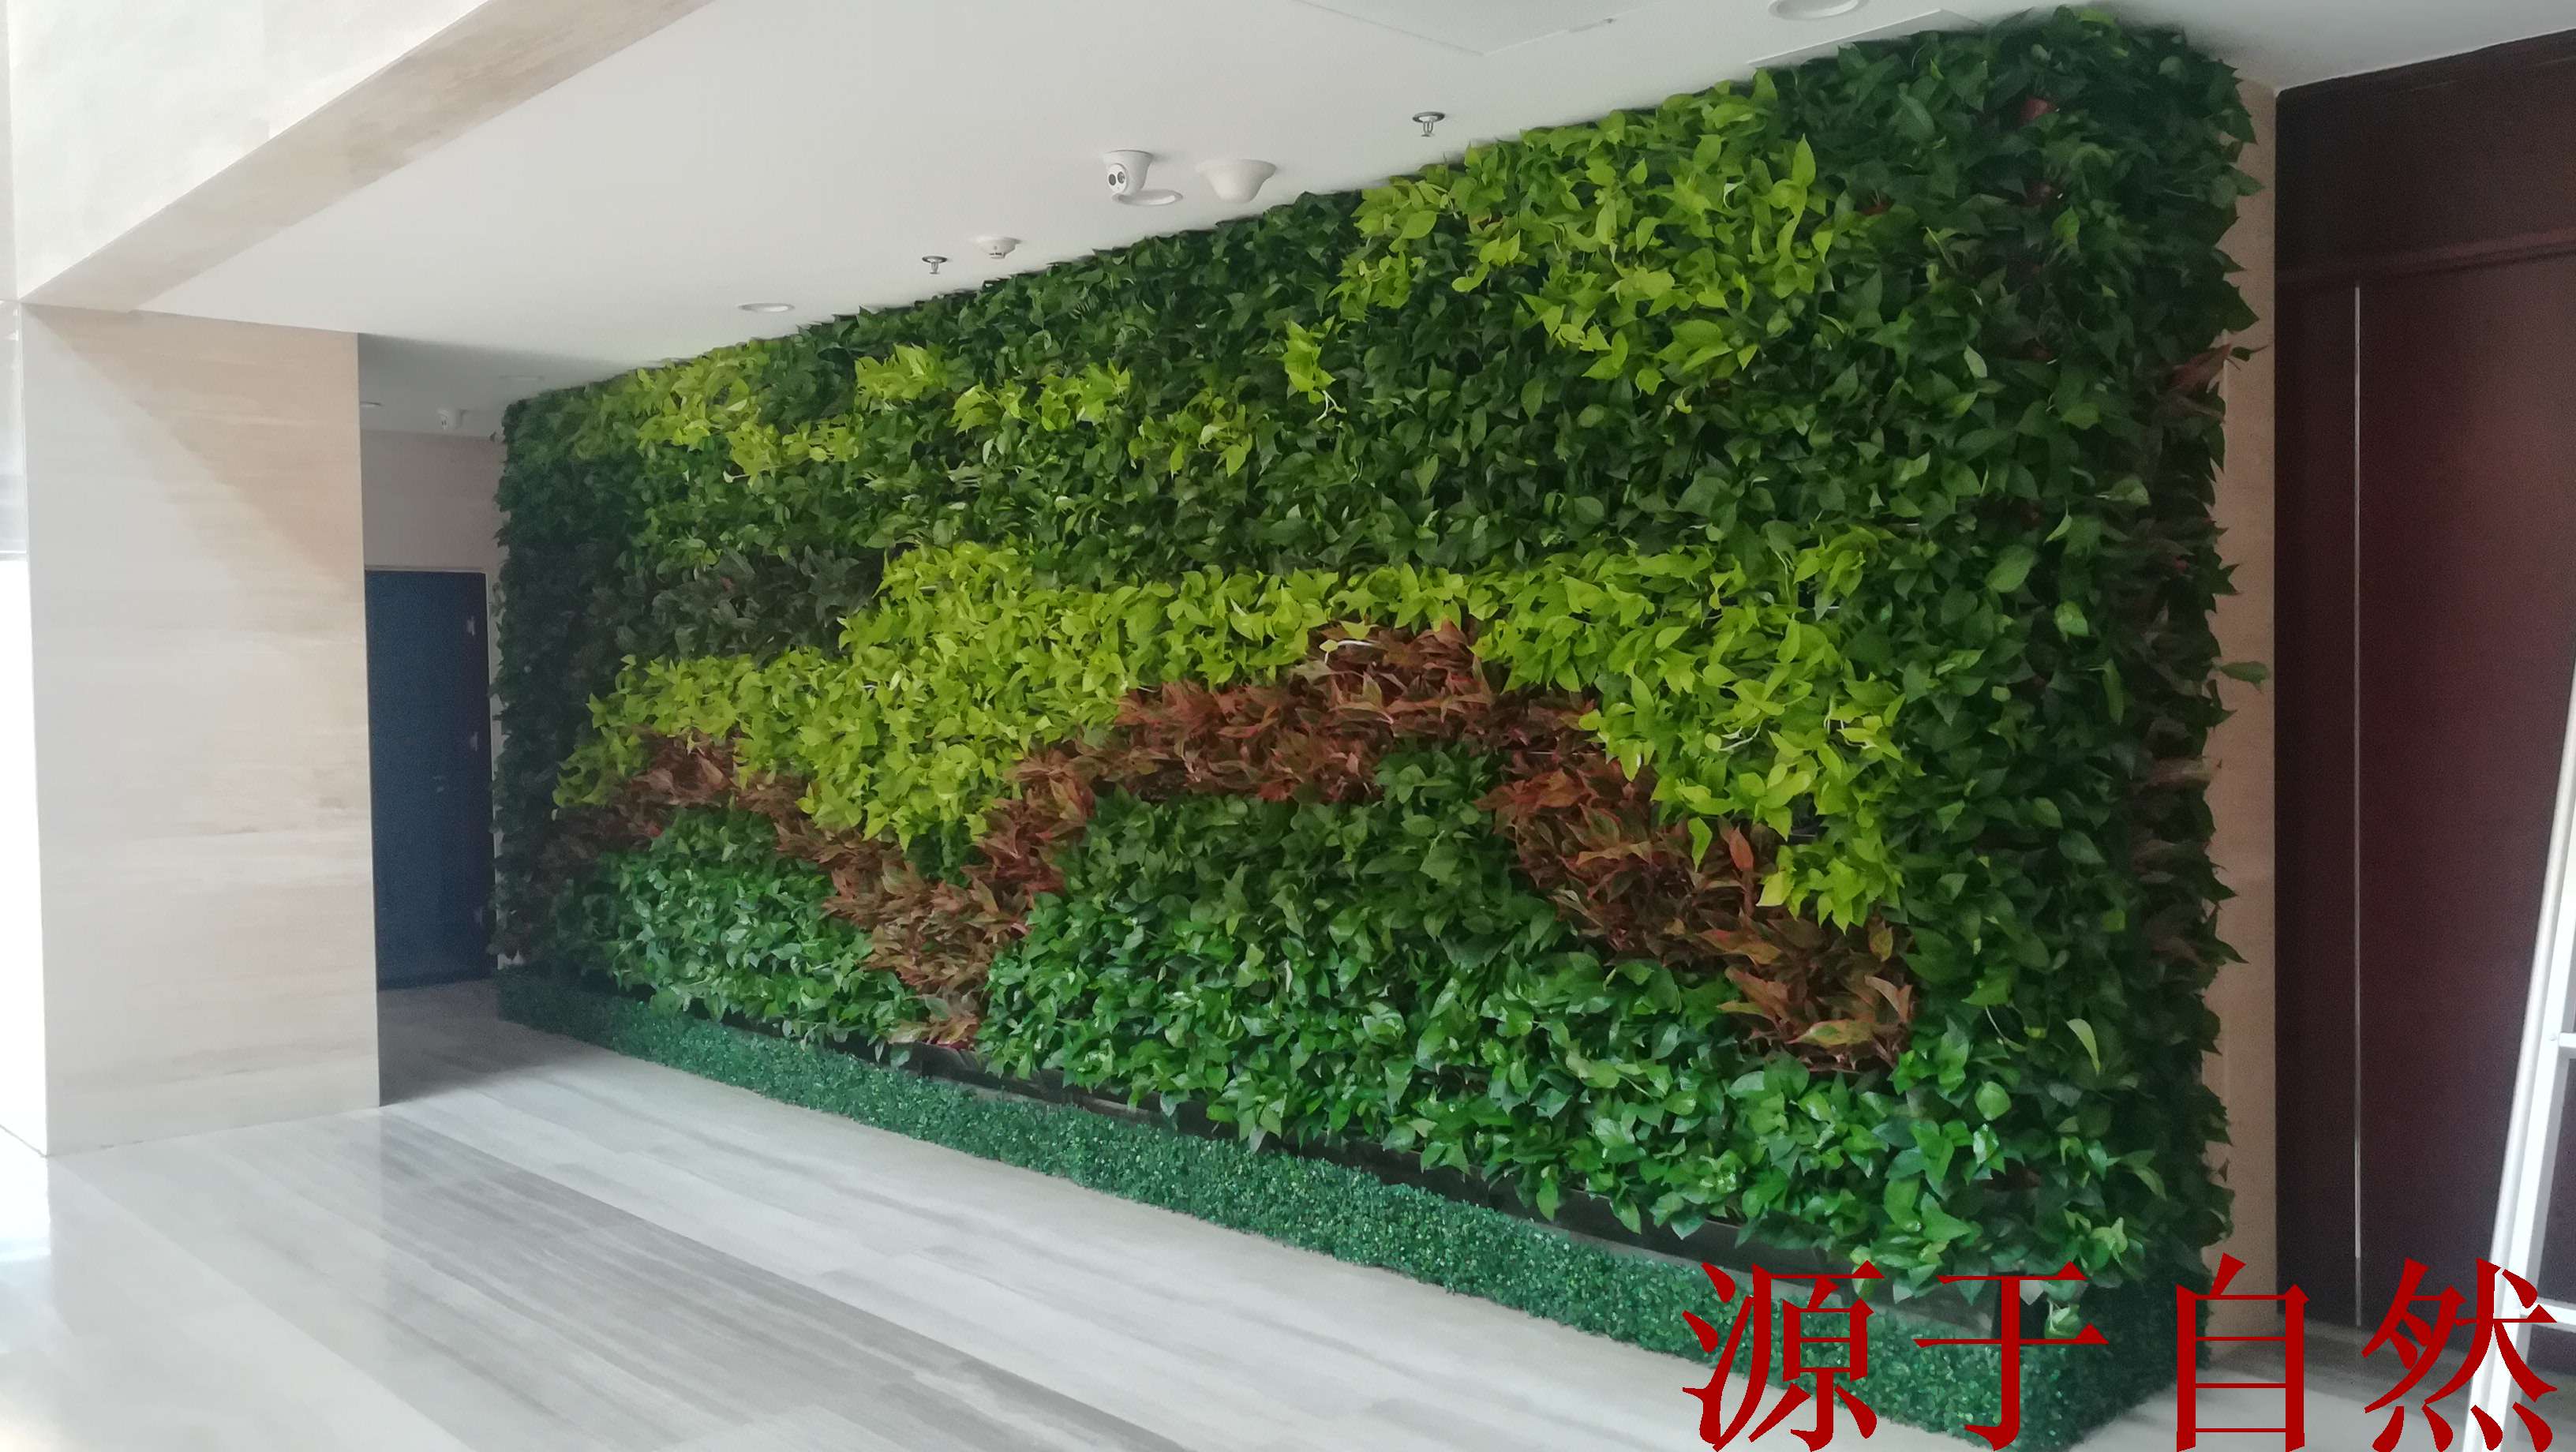 室外墙面绿化——“植物墙绿化”-室内软景-陕西源景园林有限公司|西安植物墙制作